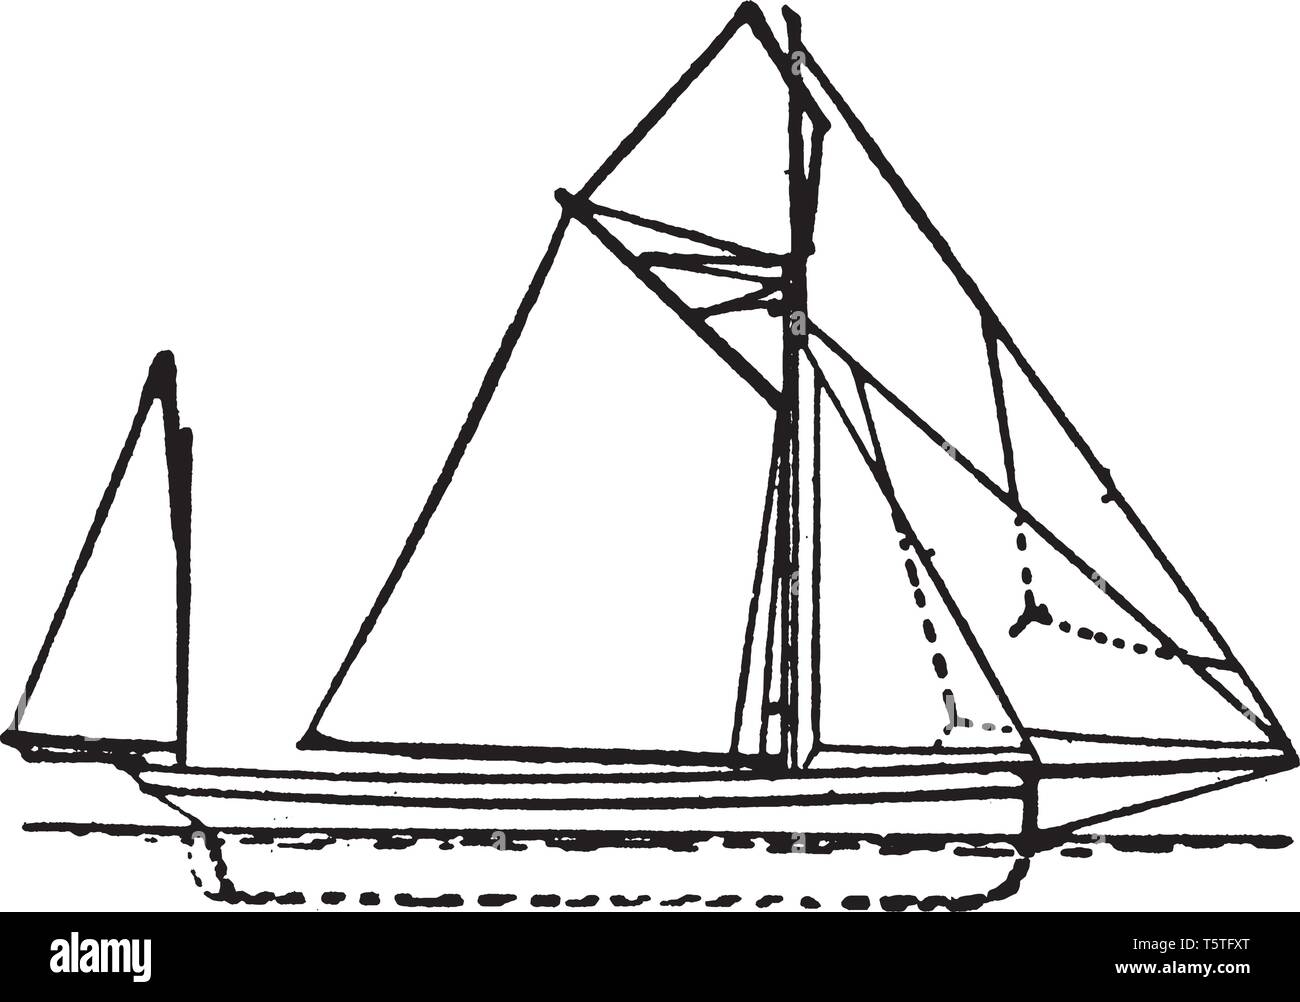 Yawl ist ein zwei dreimaster segeln Handwerk ähnlich einer Slup oder Kutter, aber mit einem zusätzlichen mizzenmast Gut nachdem der Hauptmast entfernt, Vintage Linie zeichnen Stock Vektor